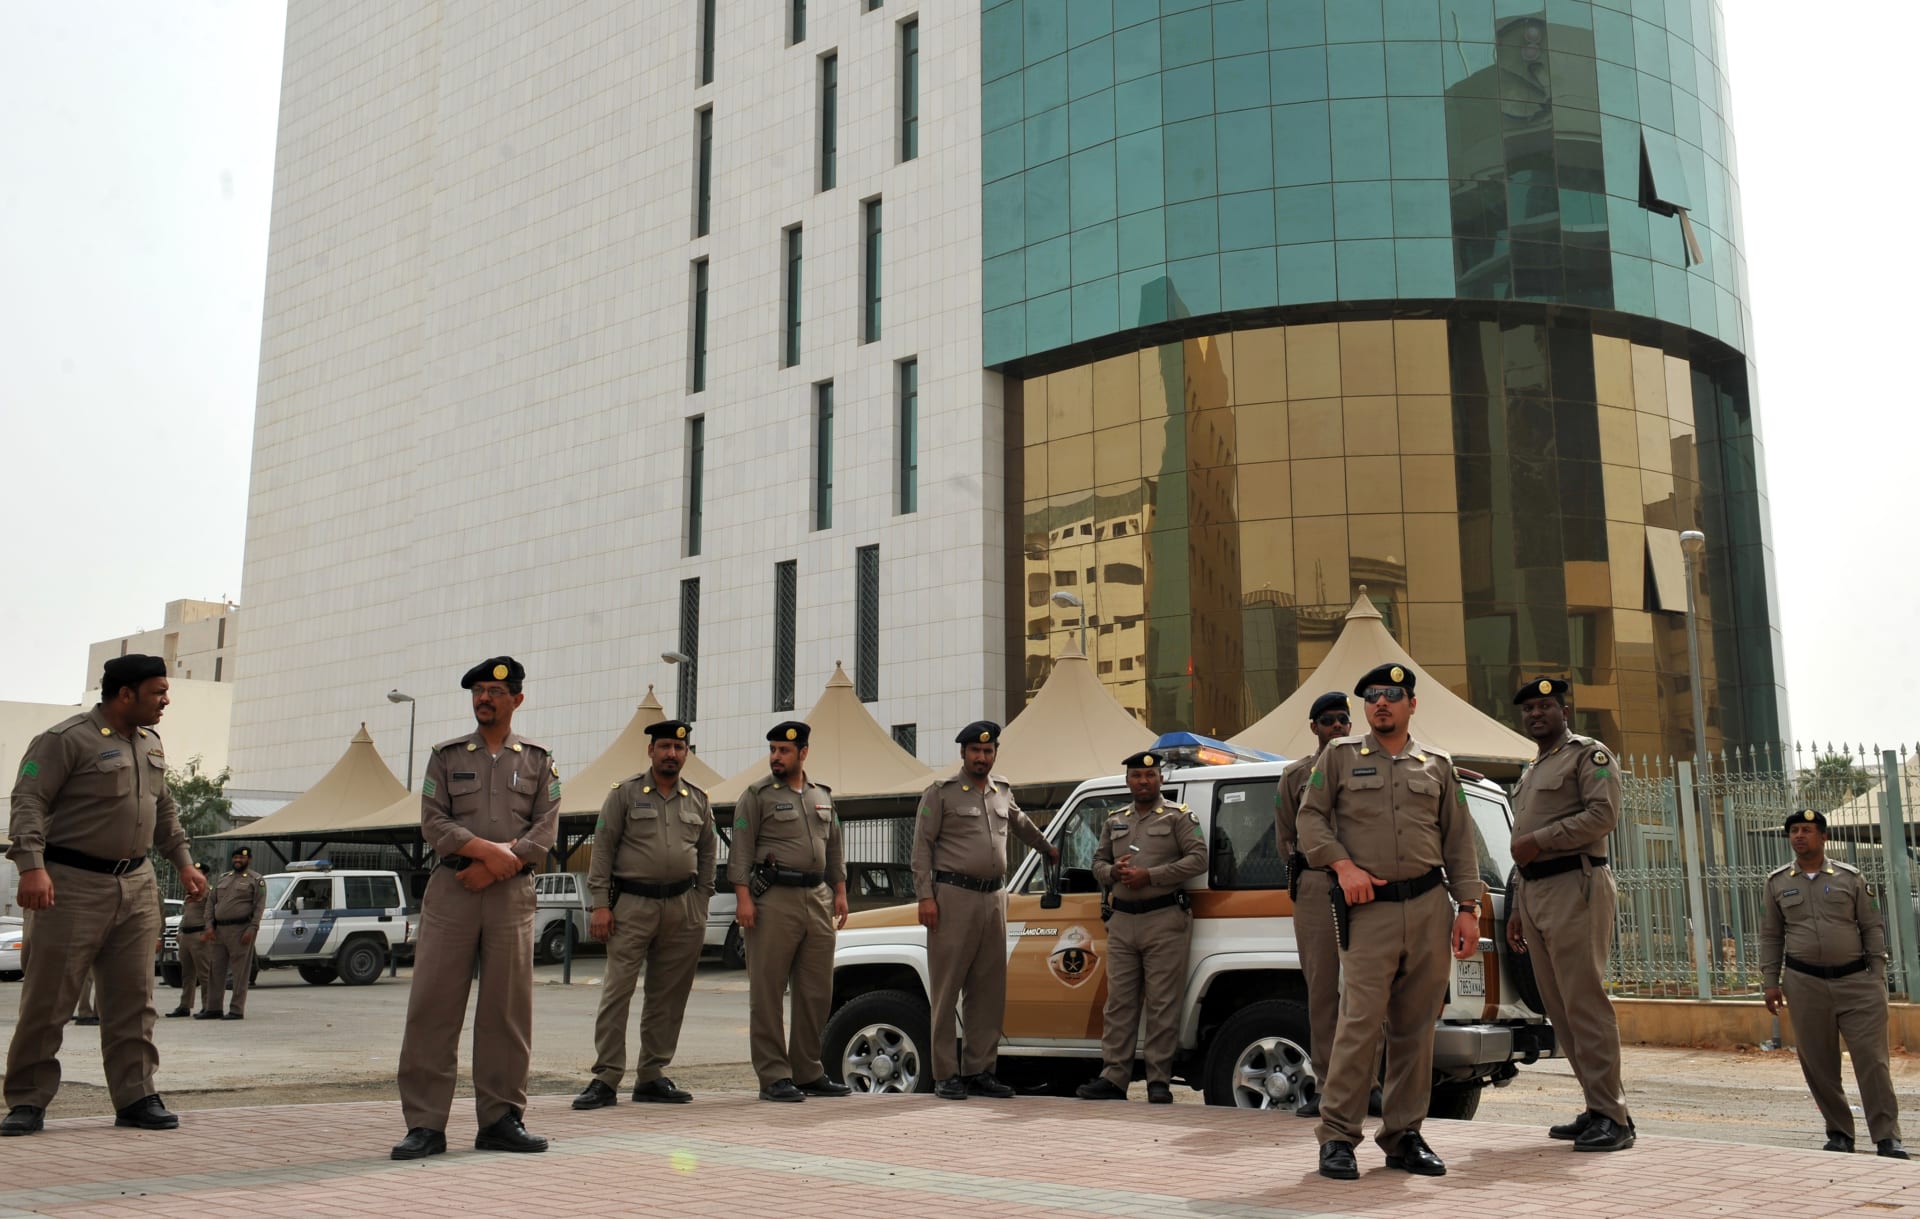 السعودية.. شبان يُجسدون مهام رجال الأمن بـ"طريقة كوميدية" والشرطة تتحرك